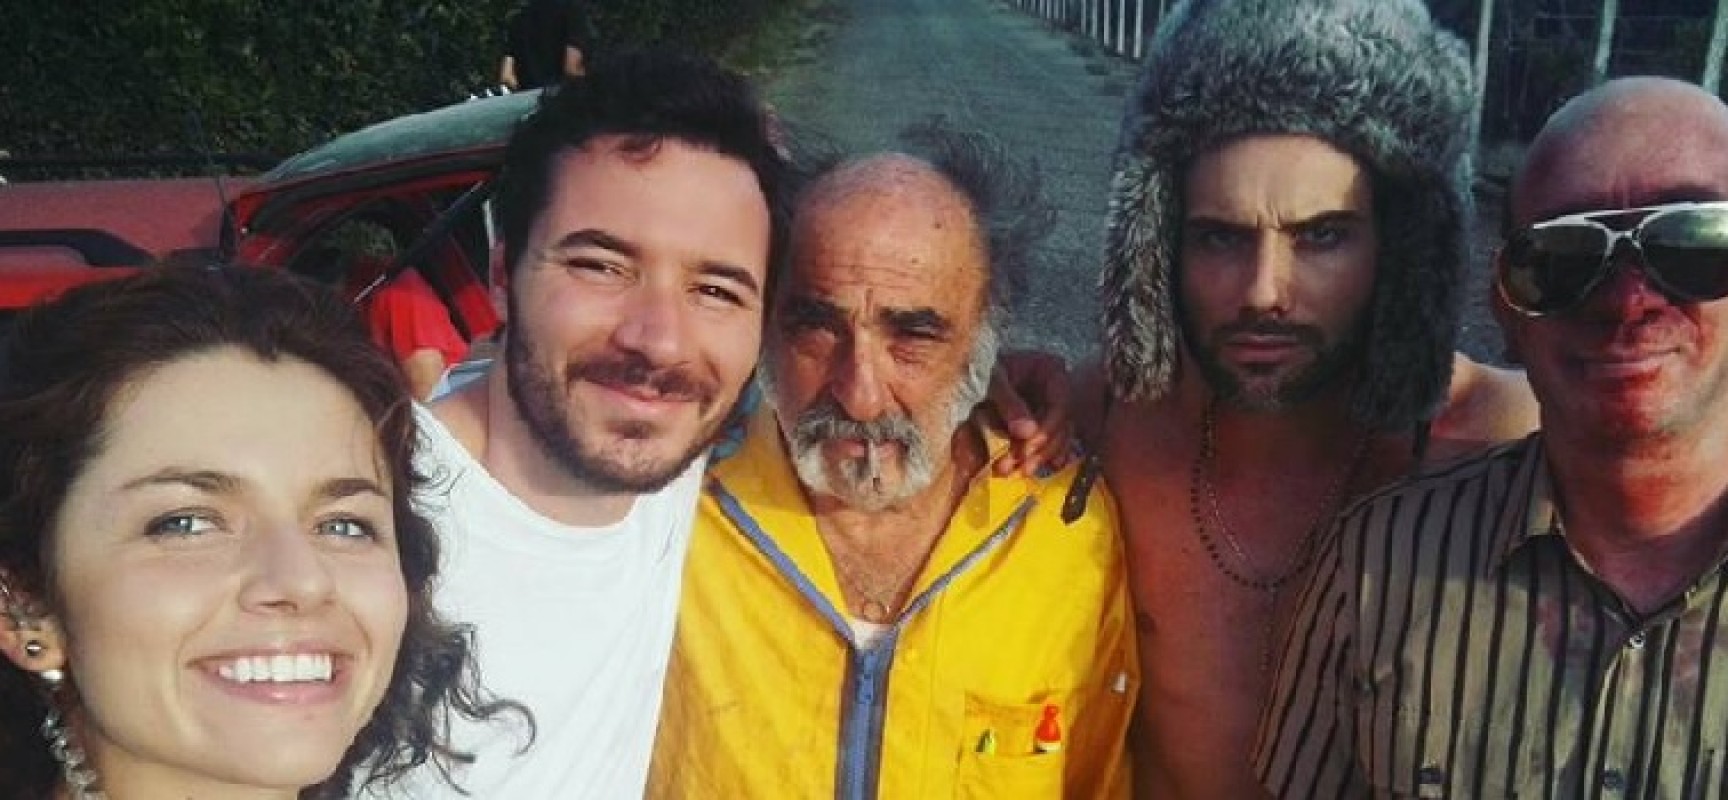 Mauro Racanati al fianco di Alessandro Haber e Carlo de Ruggieri nel cortometraggio “Insetti”